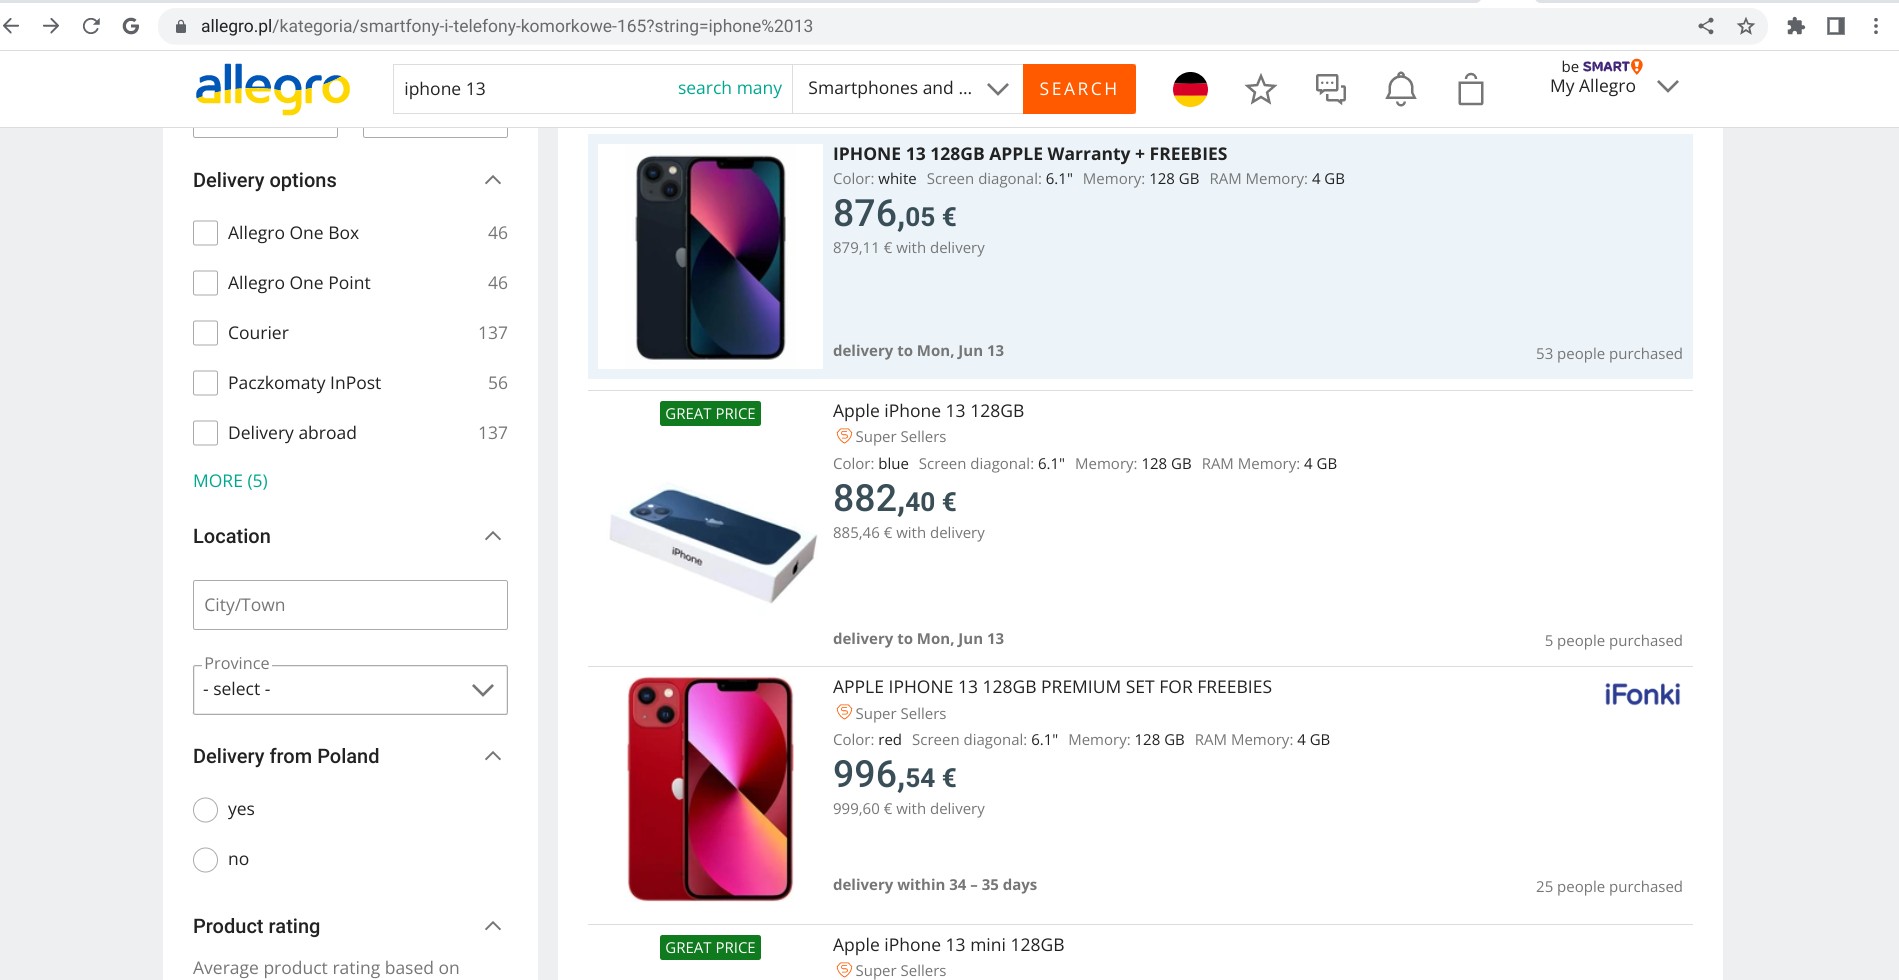 Screenshot von allegro.pl mit iPhone 13 Produktangeboten von verschiedenen Verkäufer:innen